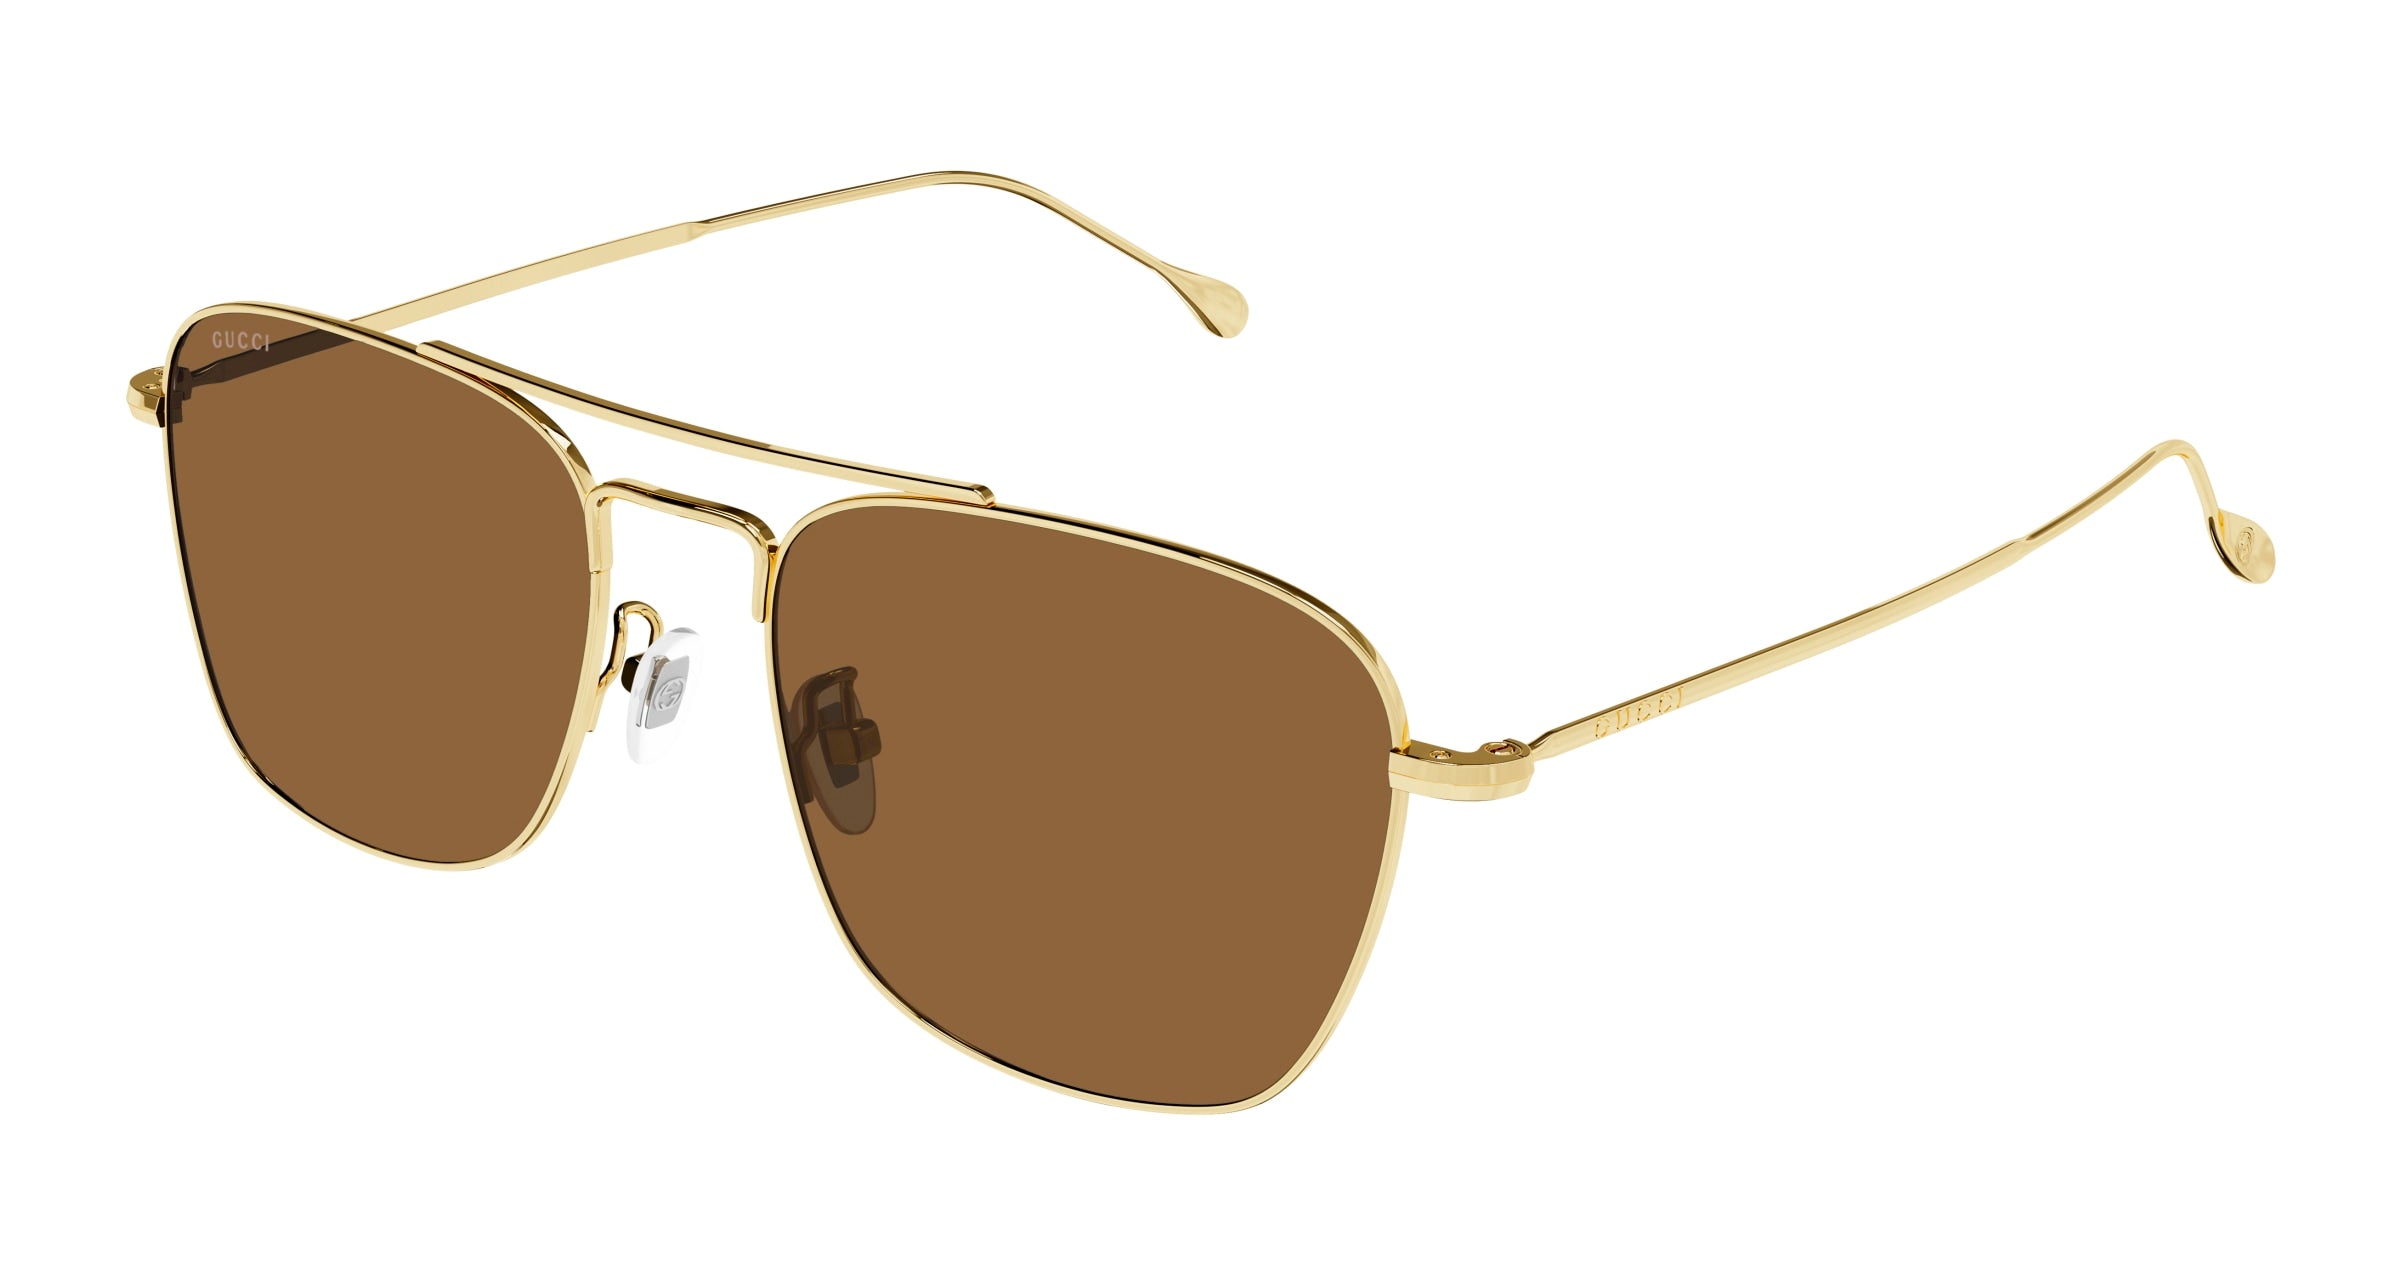 Gucci Men Sunglasses GG1183S-006 Size 56